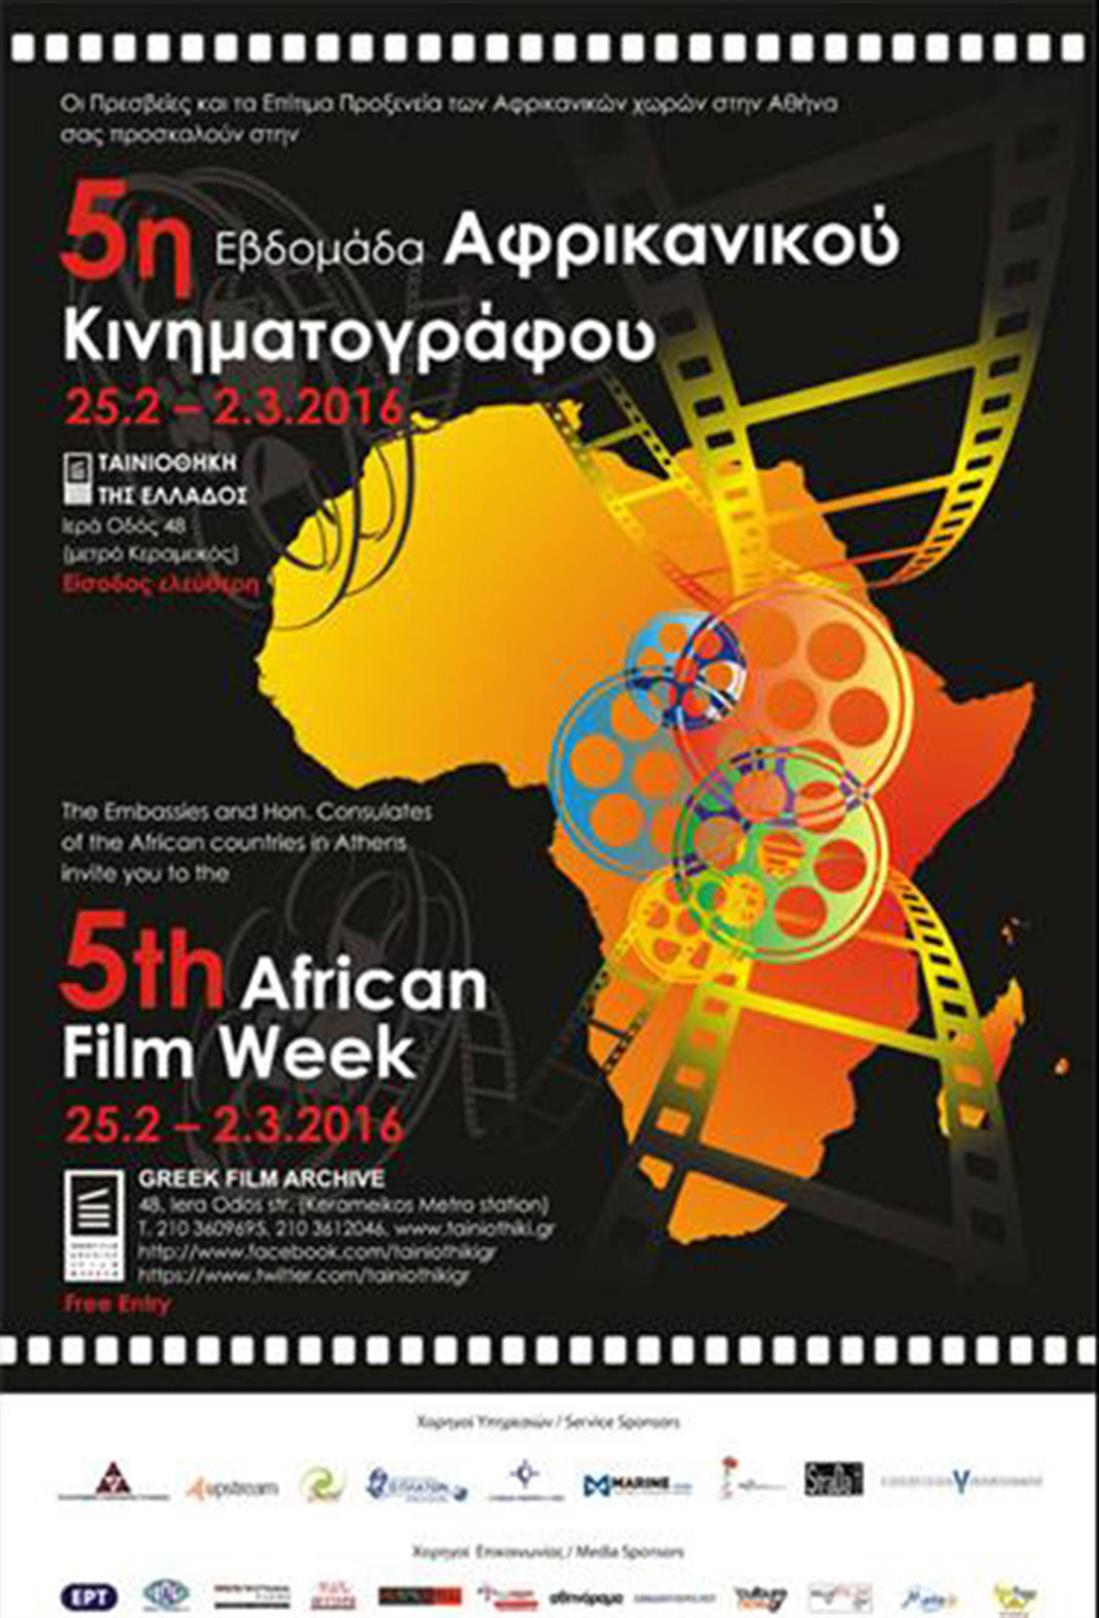 Προτάσεις - Εβδομάδα Αφρικανικού Κινηματογράφου - Ταινιοθήκη της Ελλάδος - αφιέρωμα